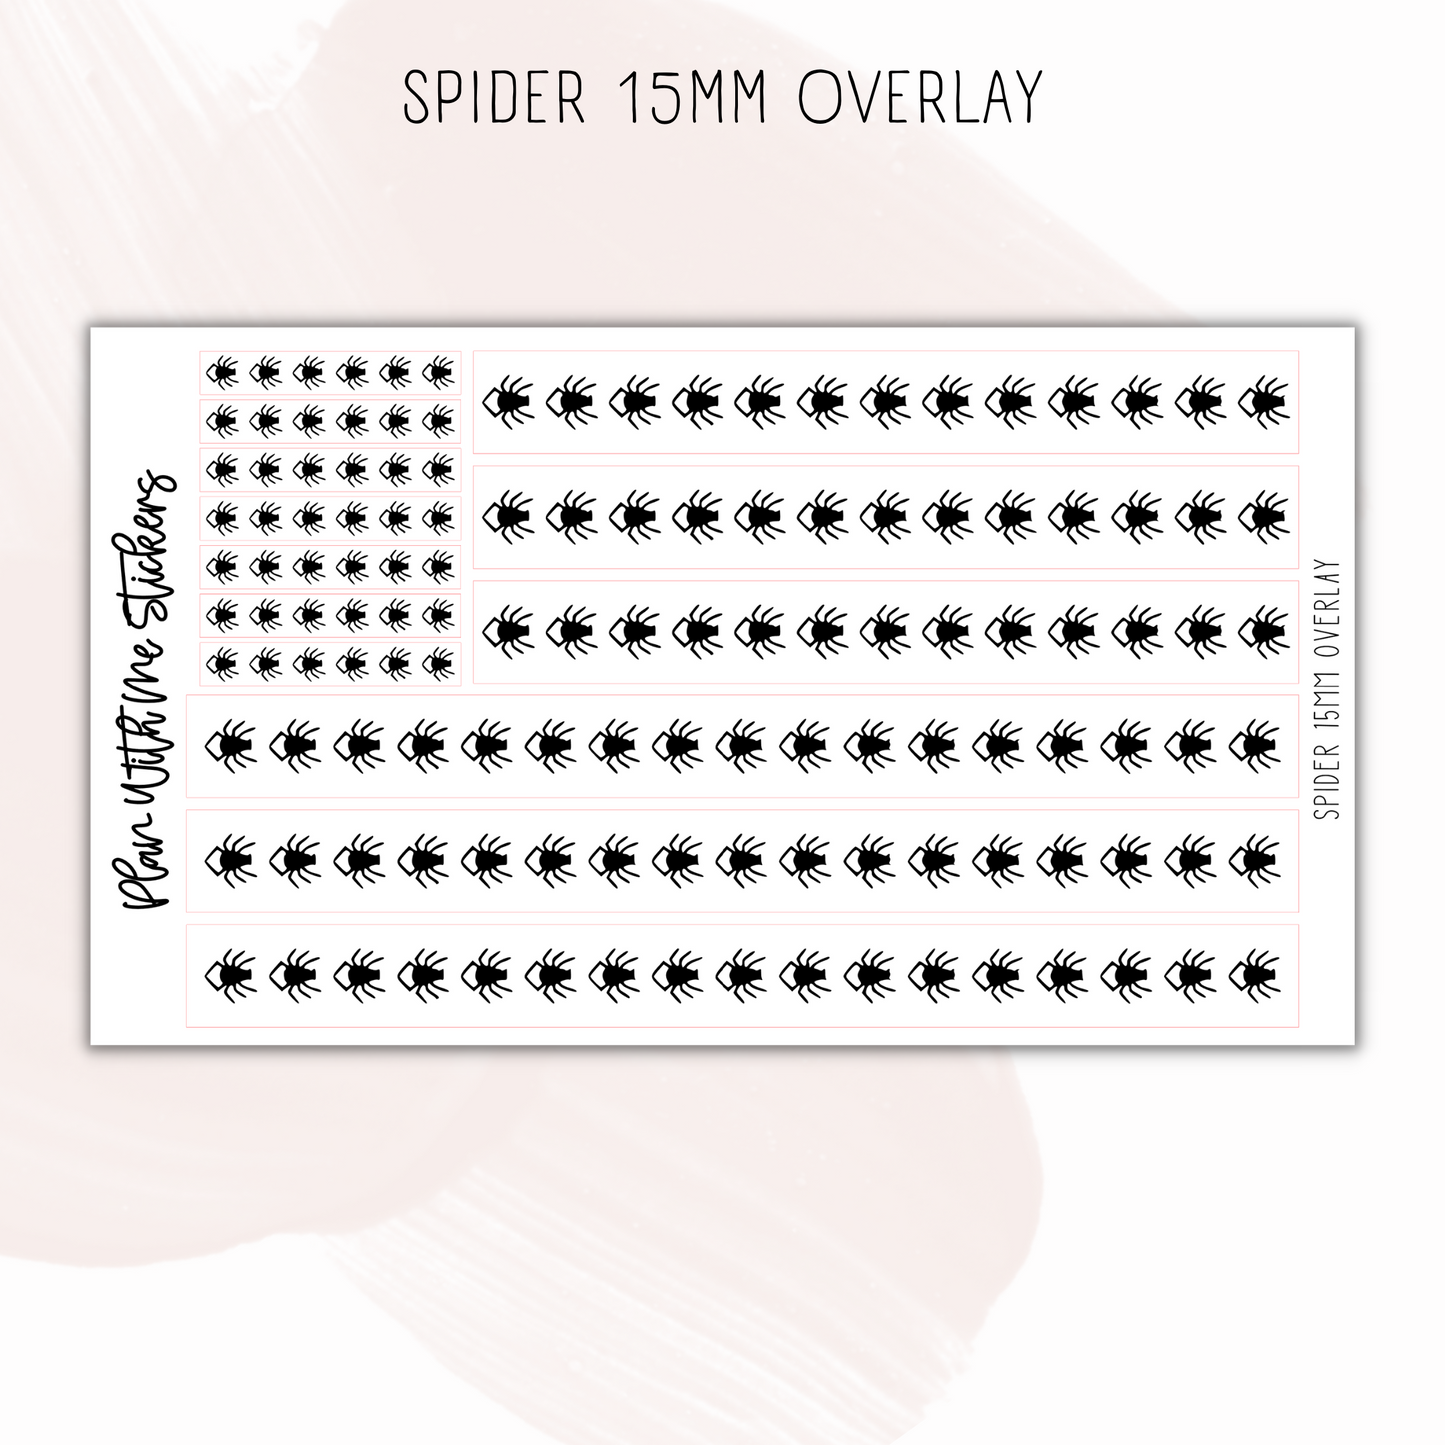 Spider 15mm Overlays